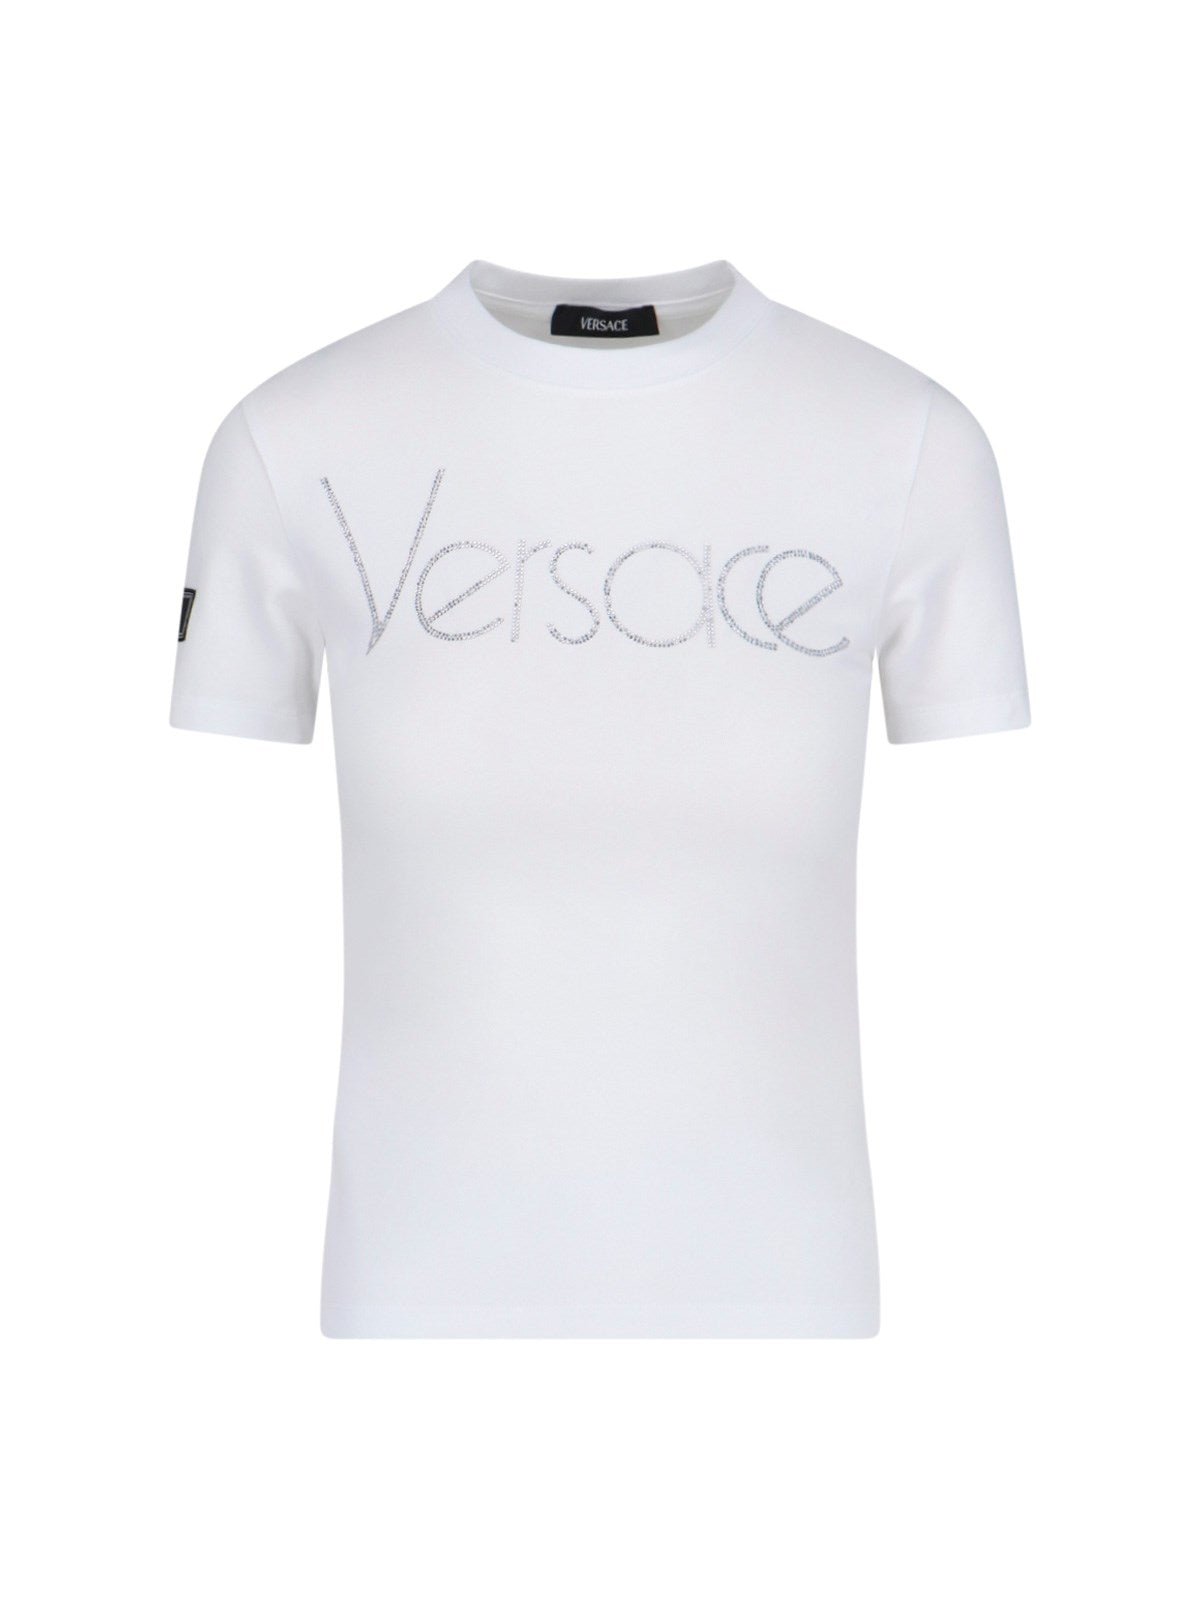 Versace T-Shirt "1978 Re-Edition Logo"-t-shirt-Versace-T-shirt "1978 re-edition logo" Versace, in misto cotone bianco, girocollo, maniche corte, dettaglio etichetta a contrasto applicata manica, logo cristalli fronte, orlo dritto.-Dresso